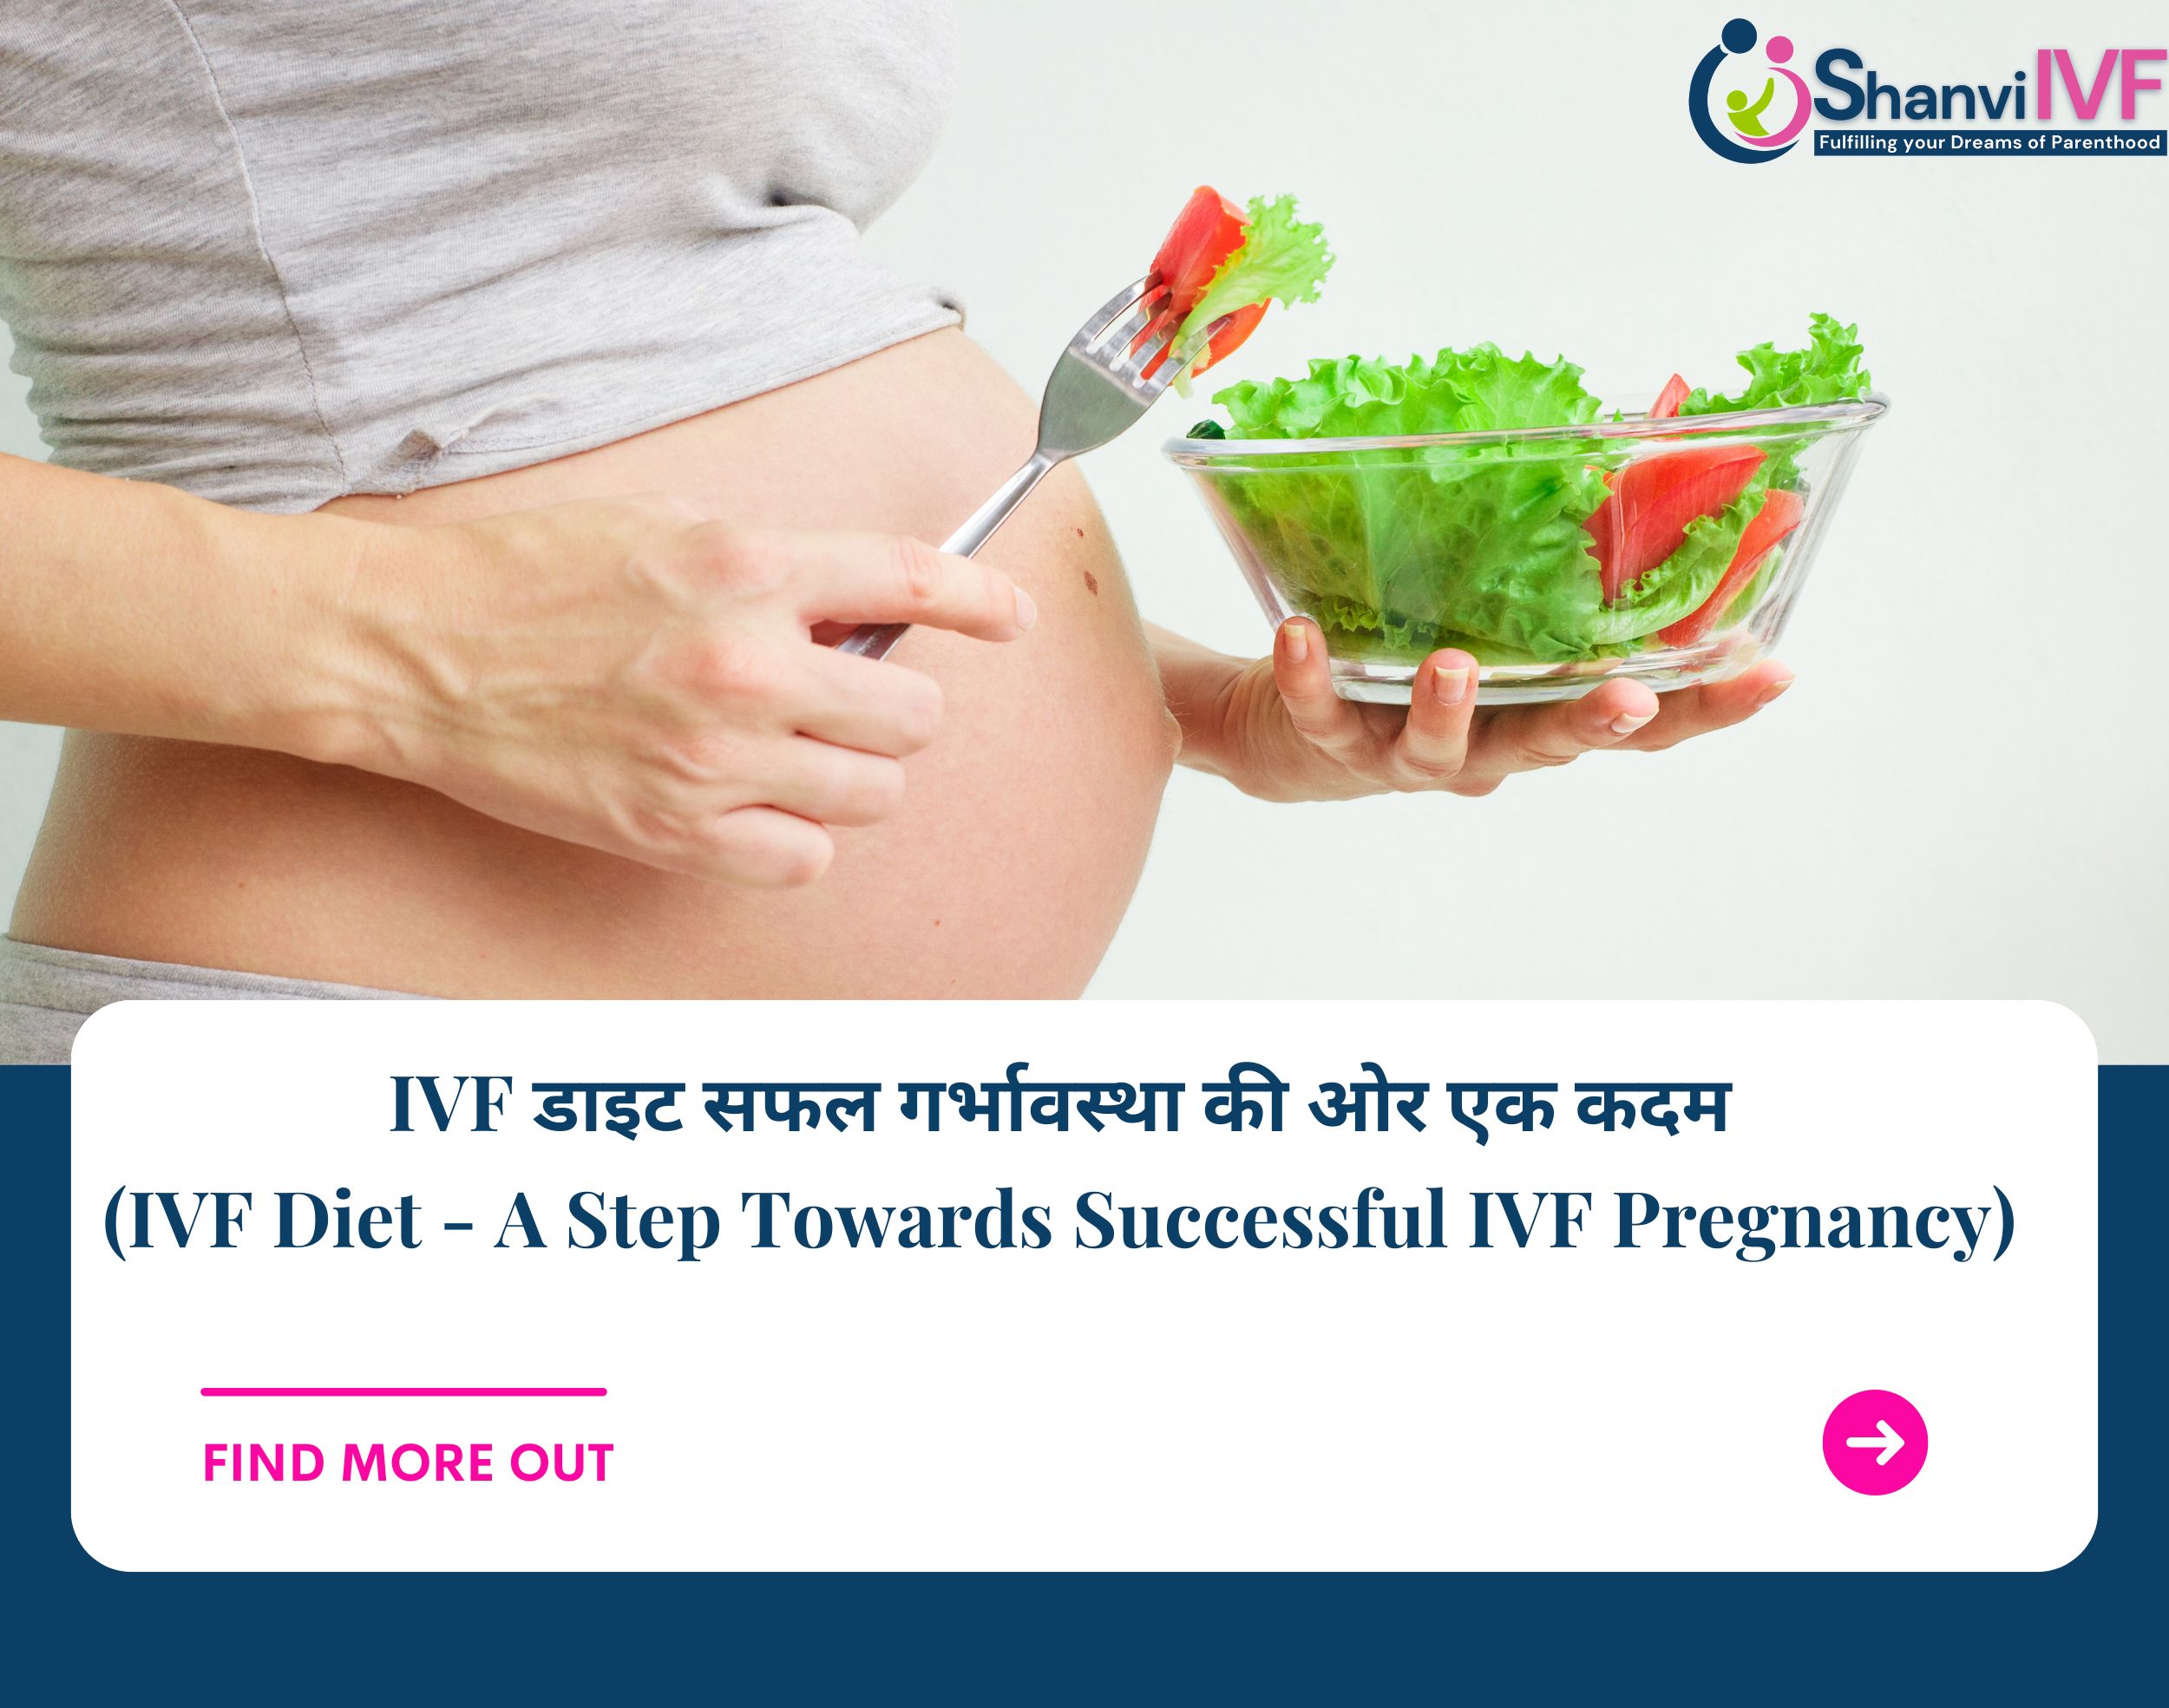 IVF डाइट सफलगर्भावस्था की ओर एक कदम (IVF Diet – A Step Towards Successful IVF Pregnancy)